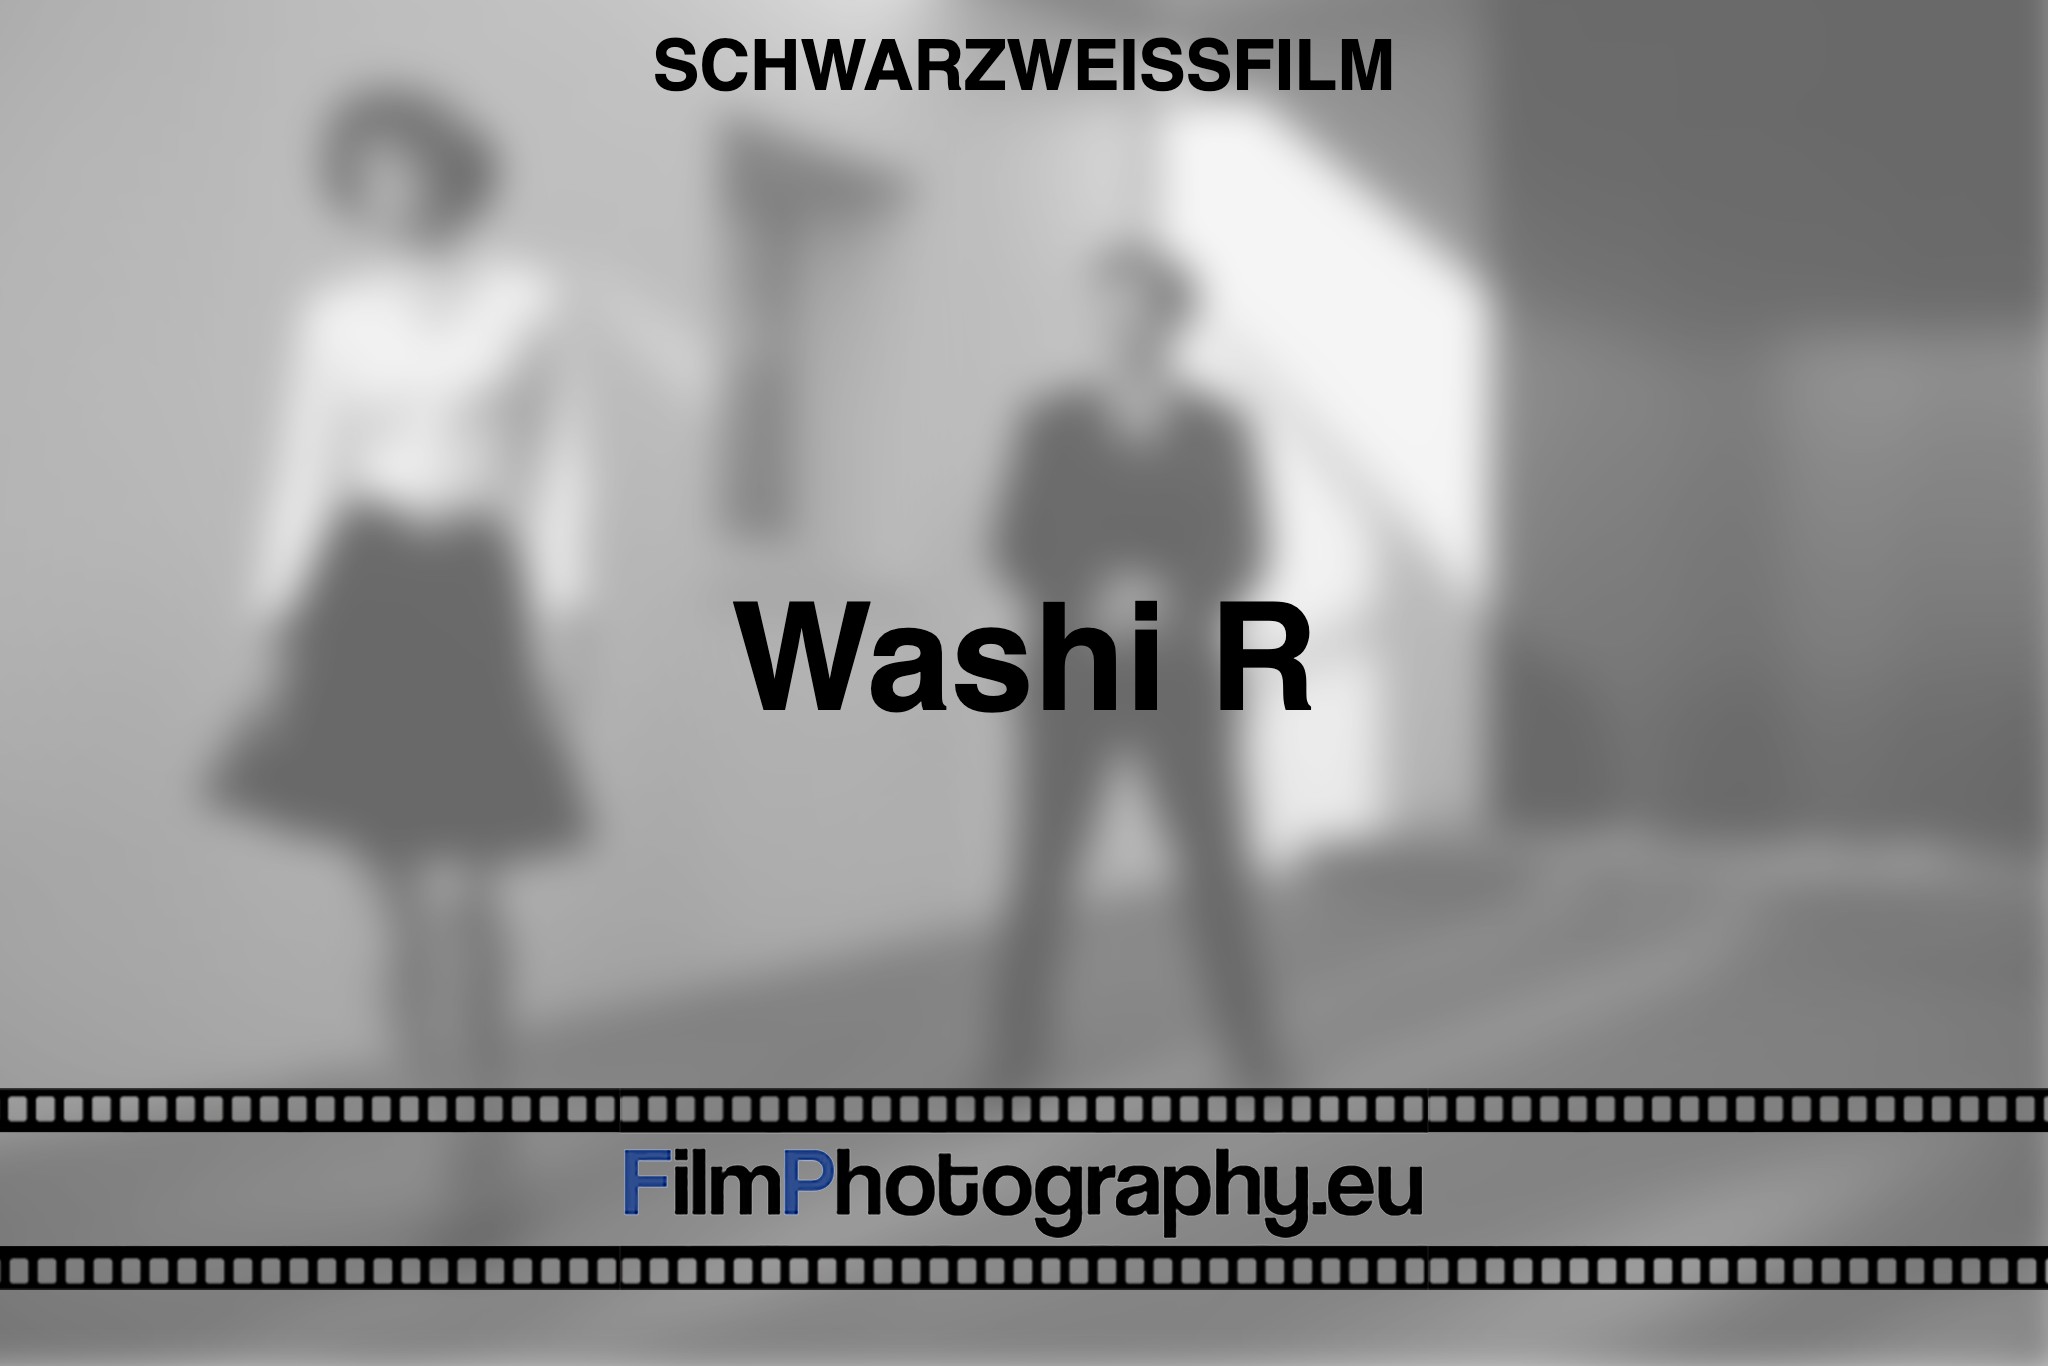 washi-r-schwarzweißfilm-bnv